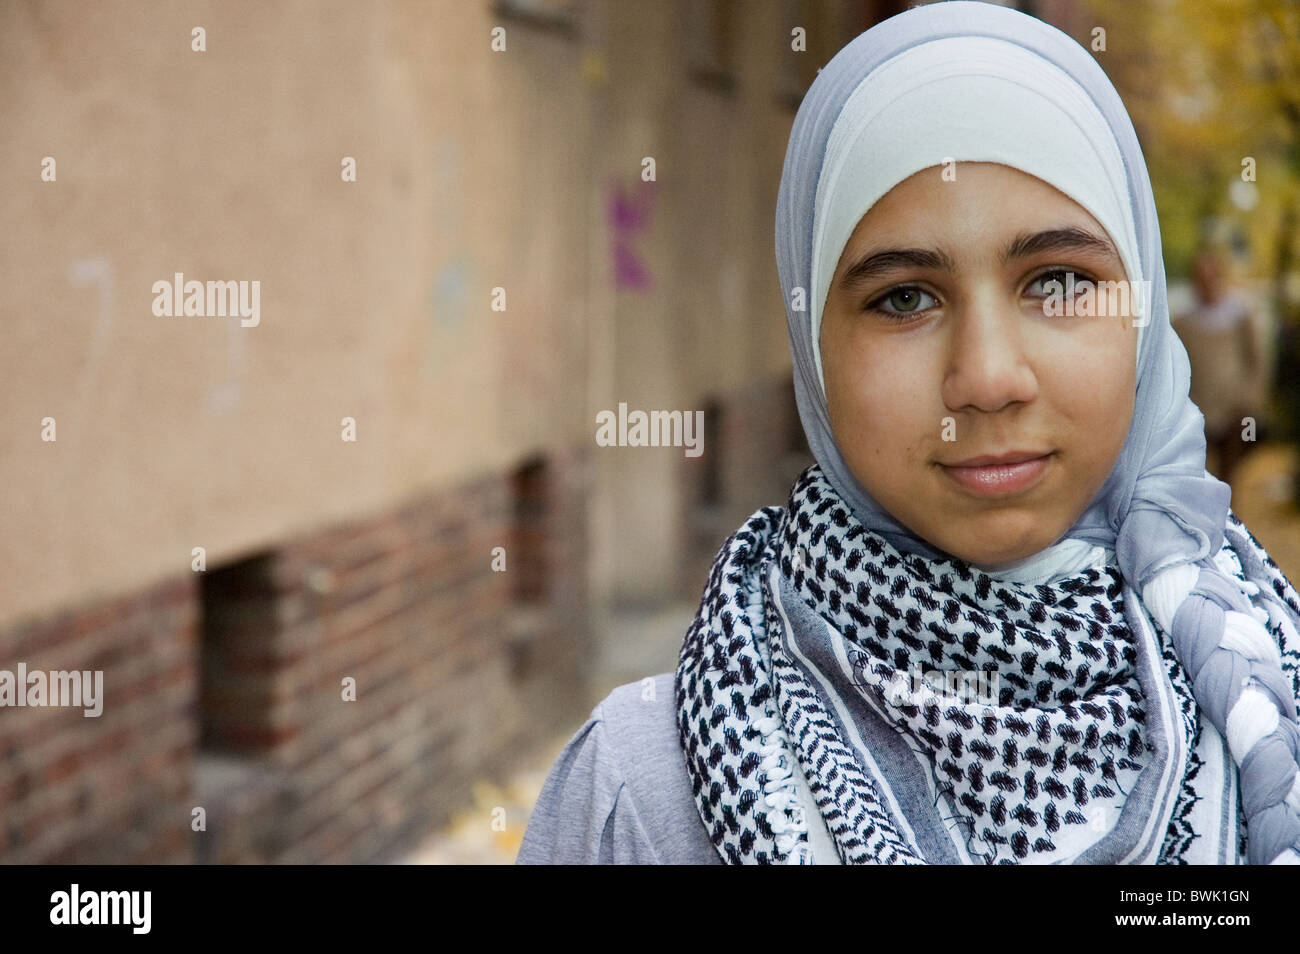 Ein junges Mädchen mit Kopftuch, Berlin, Deutschland Stockfotografie - Alamy